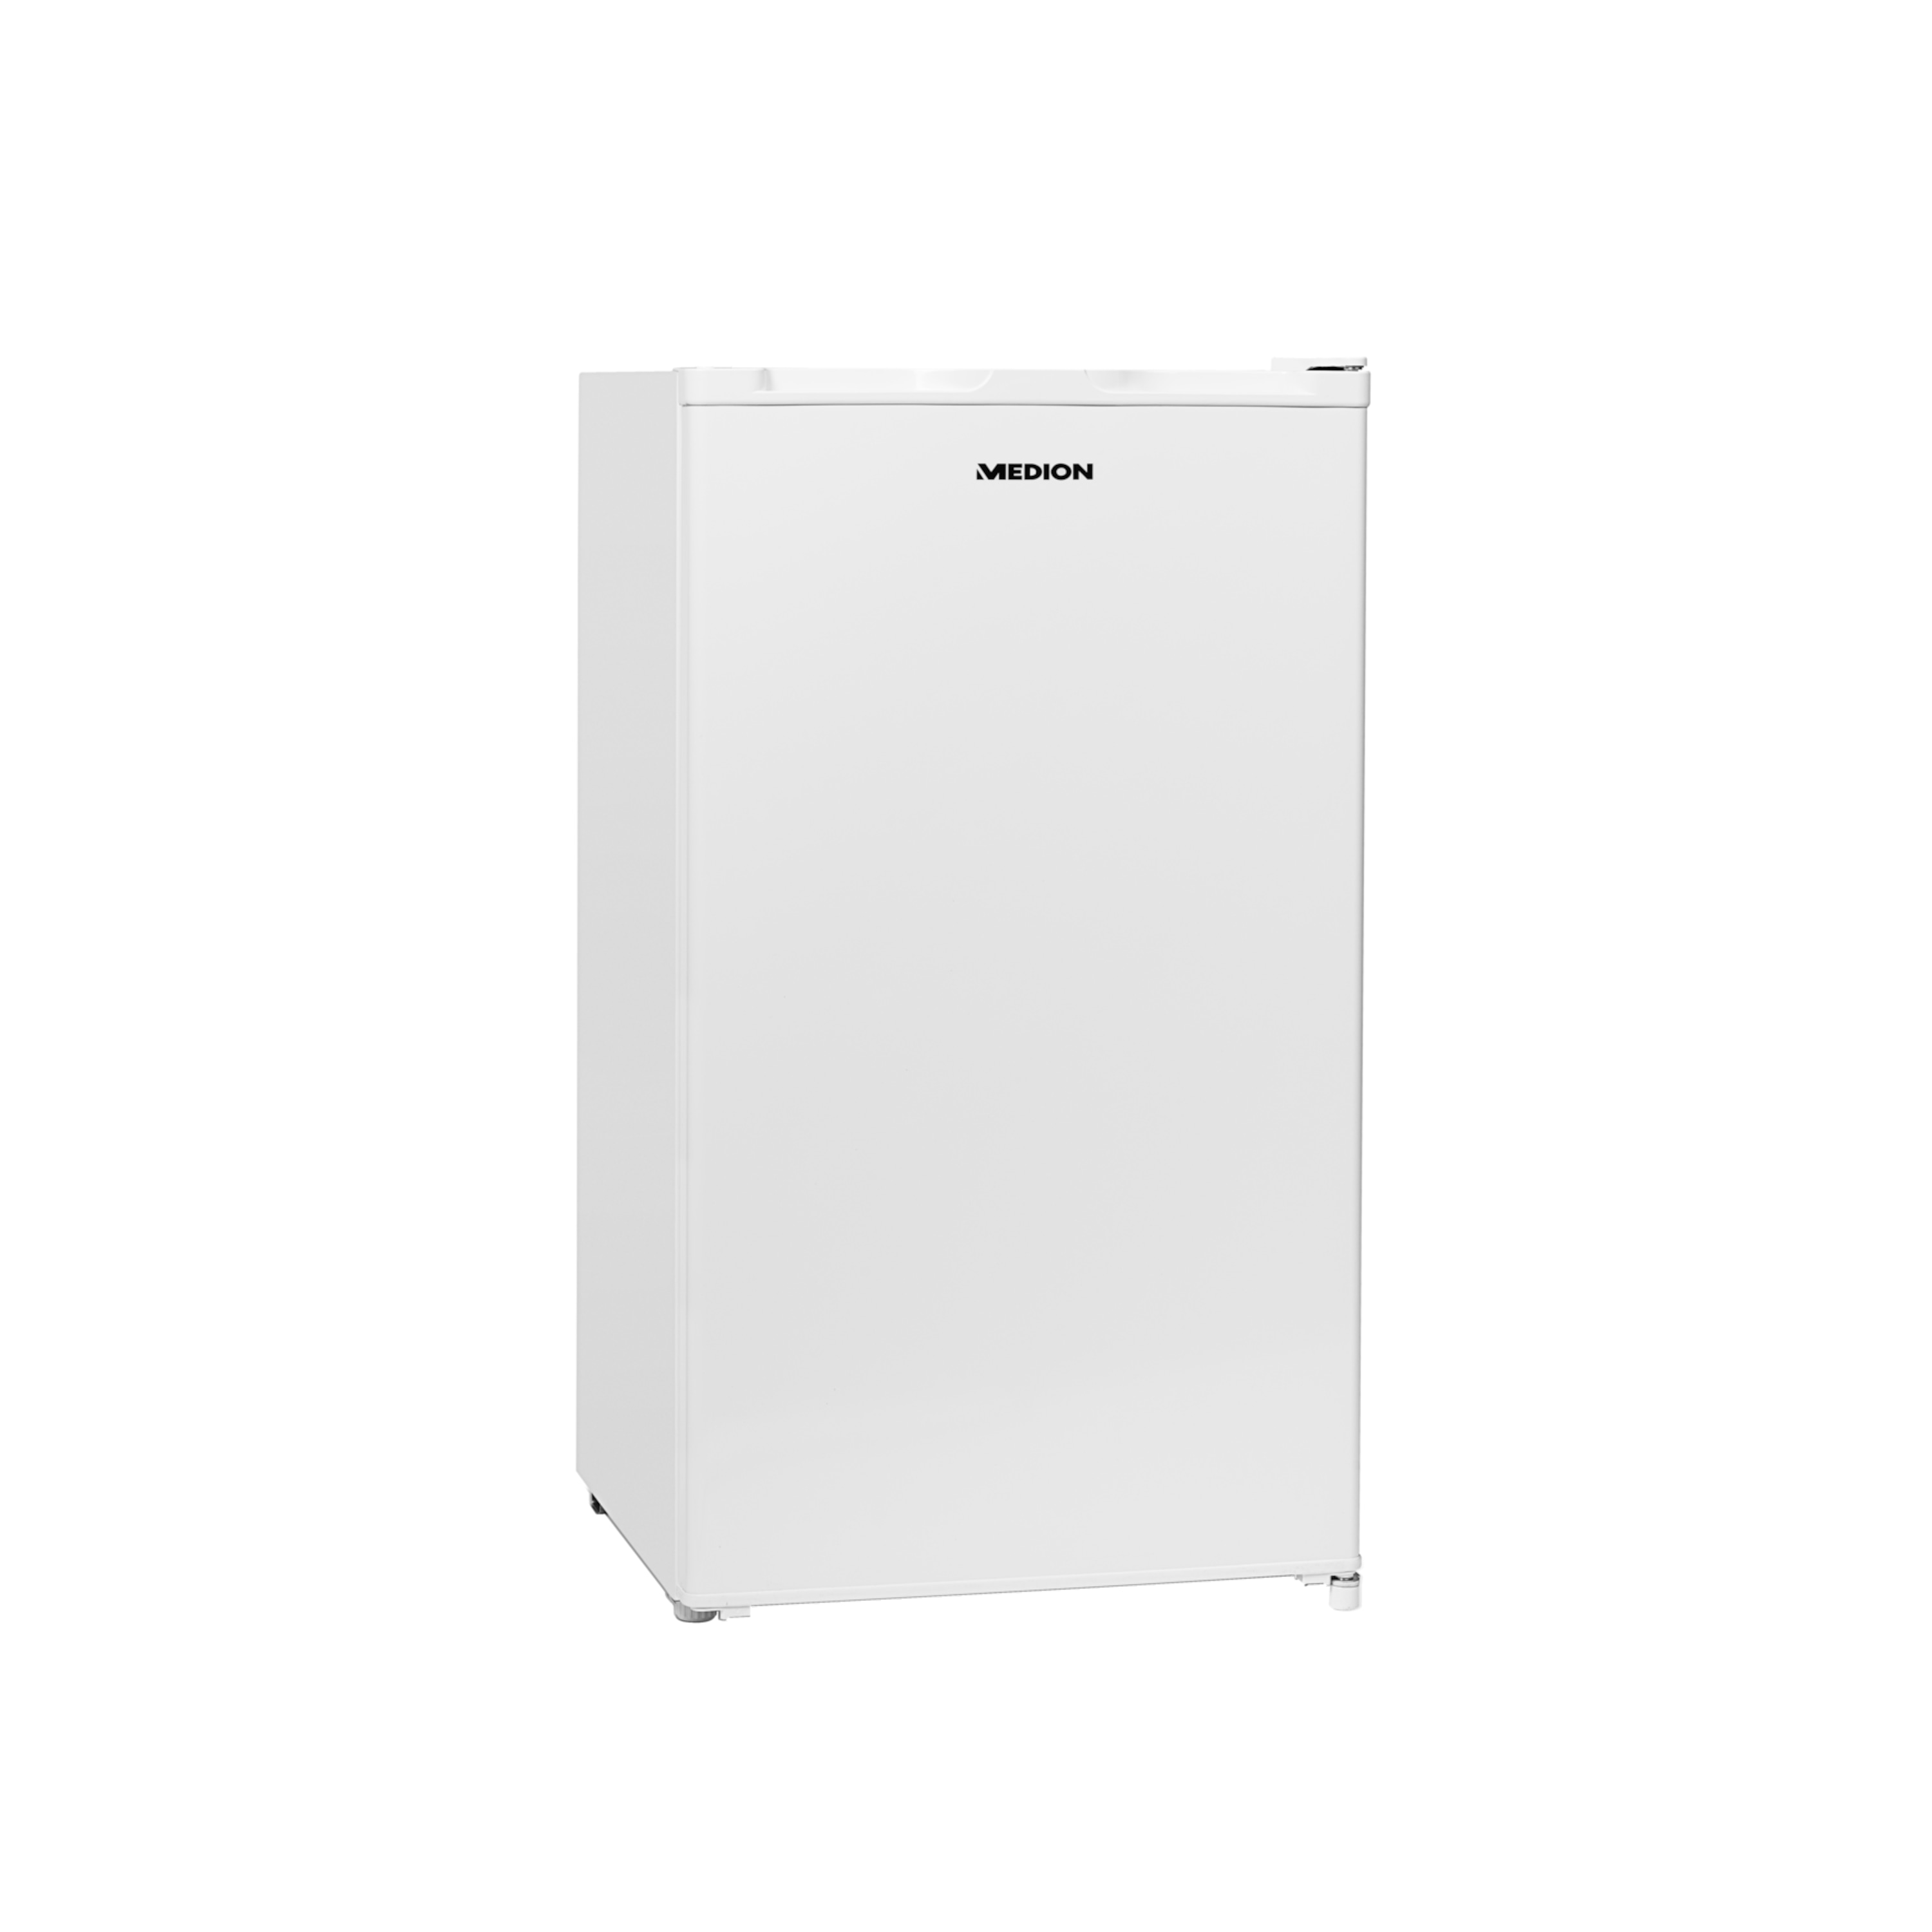 MEDION® Kühlschrank mit Eiswürfelfach MD 37242, Geräuschpegel 41 dB, 93 Liter Fassungsvermögen, platzsparende Größe